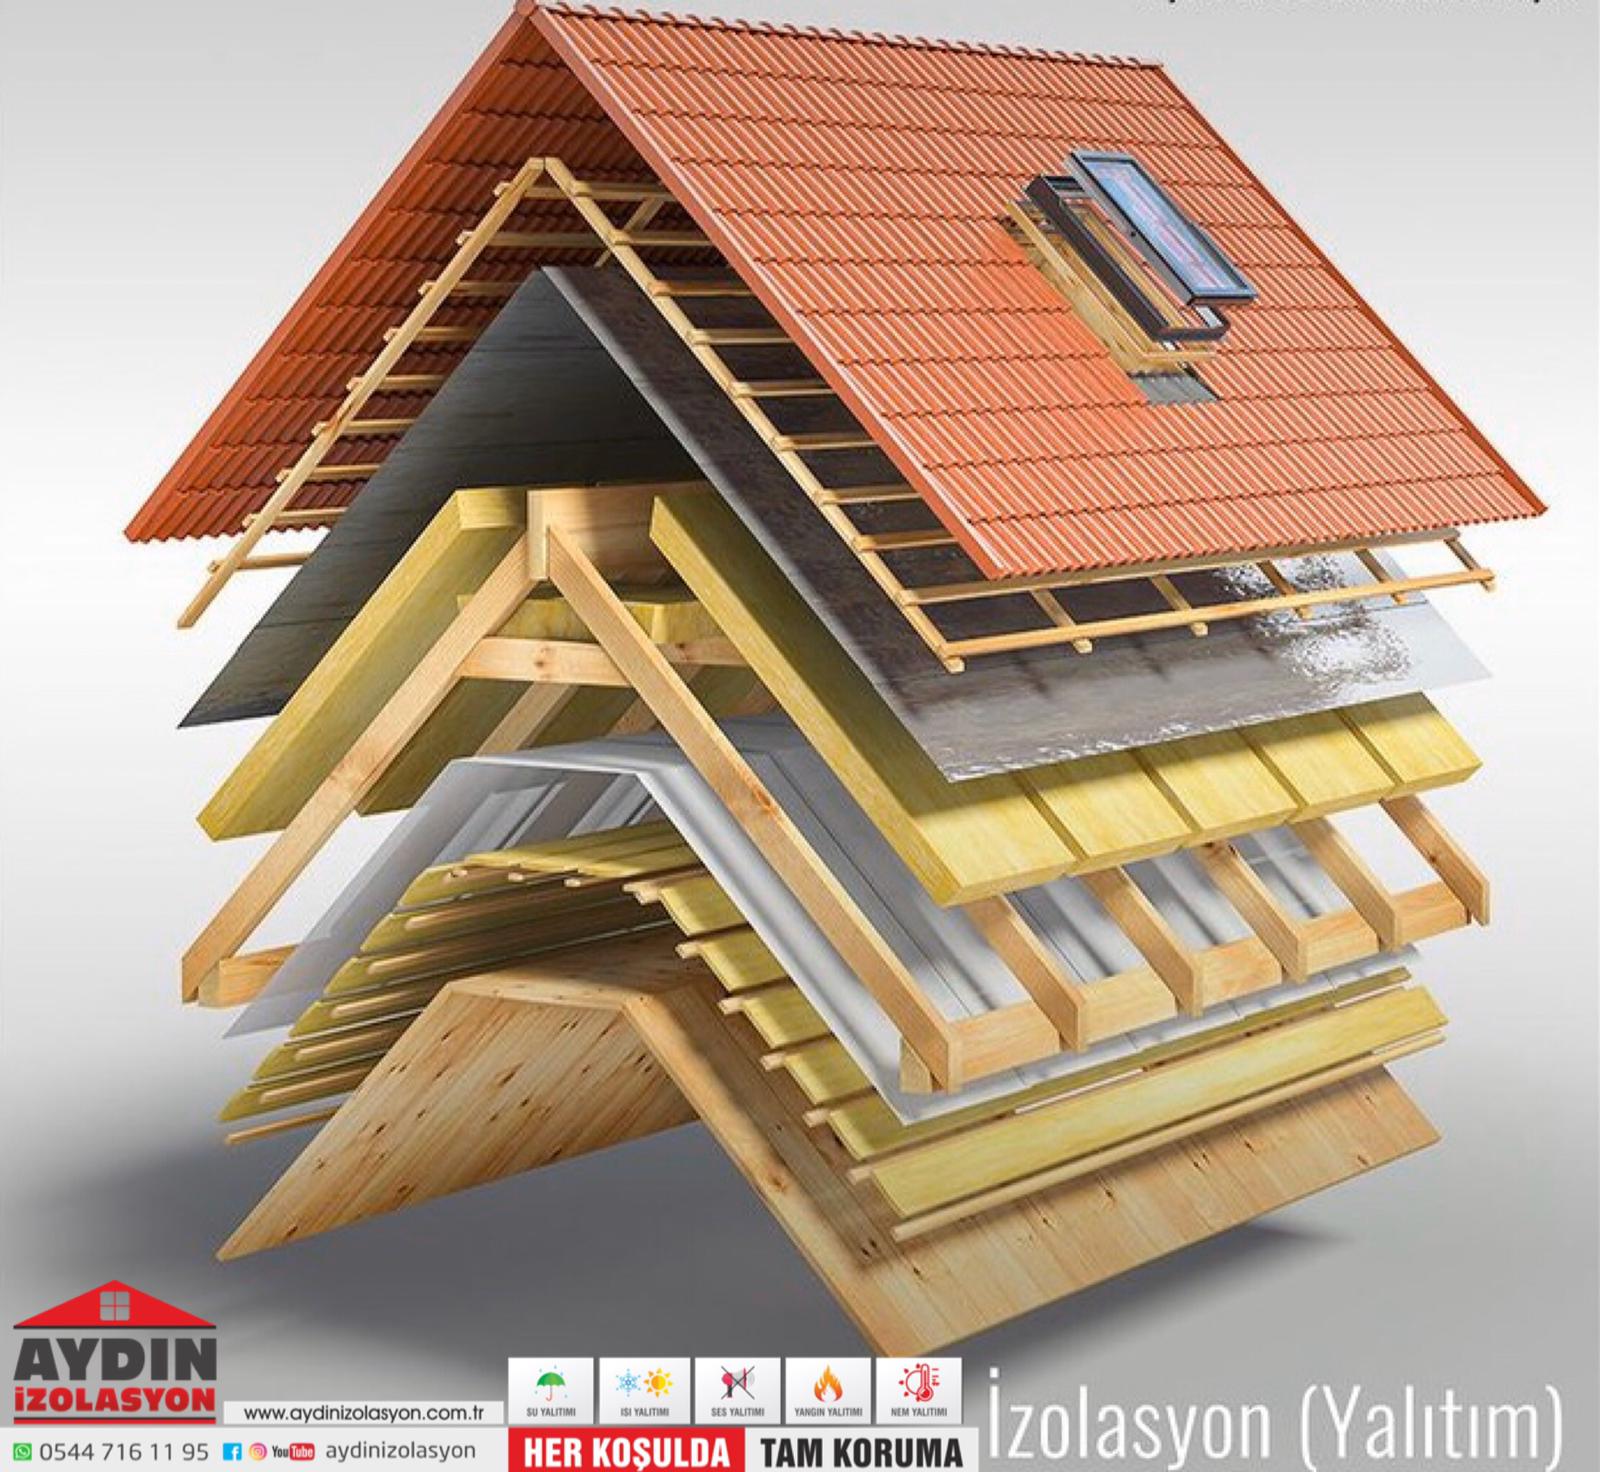 En İyi Çatı İzolasyon M2 Fiyatları | Çatı Yalıtım Malzeme M2 Fiyatları 